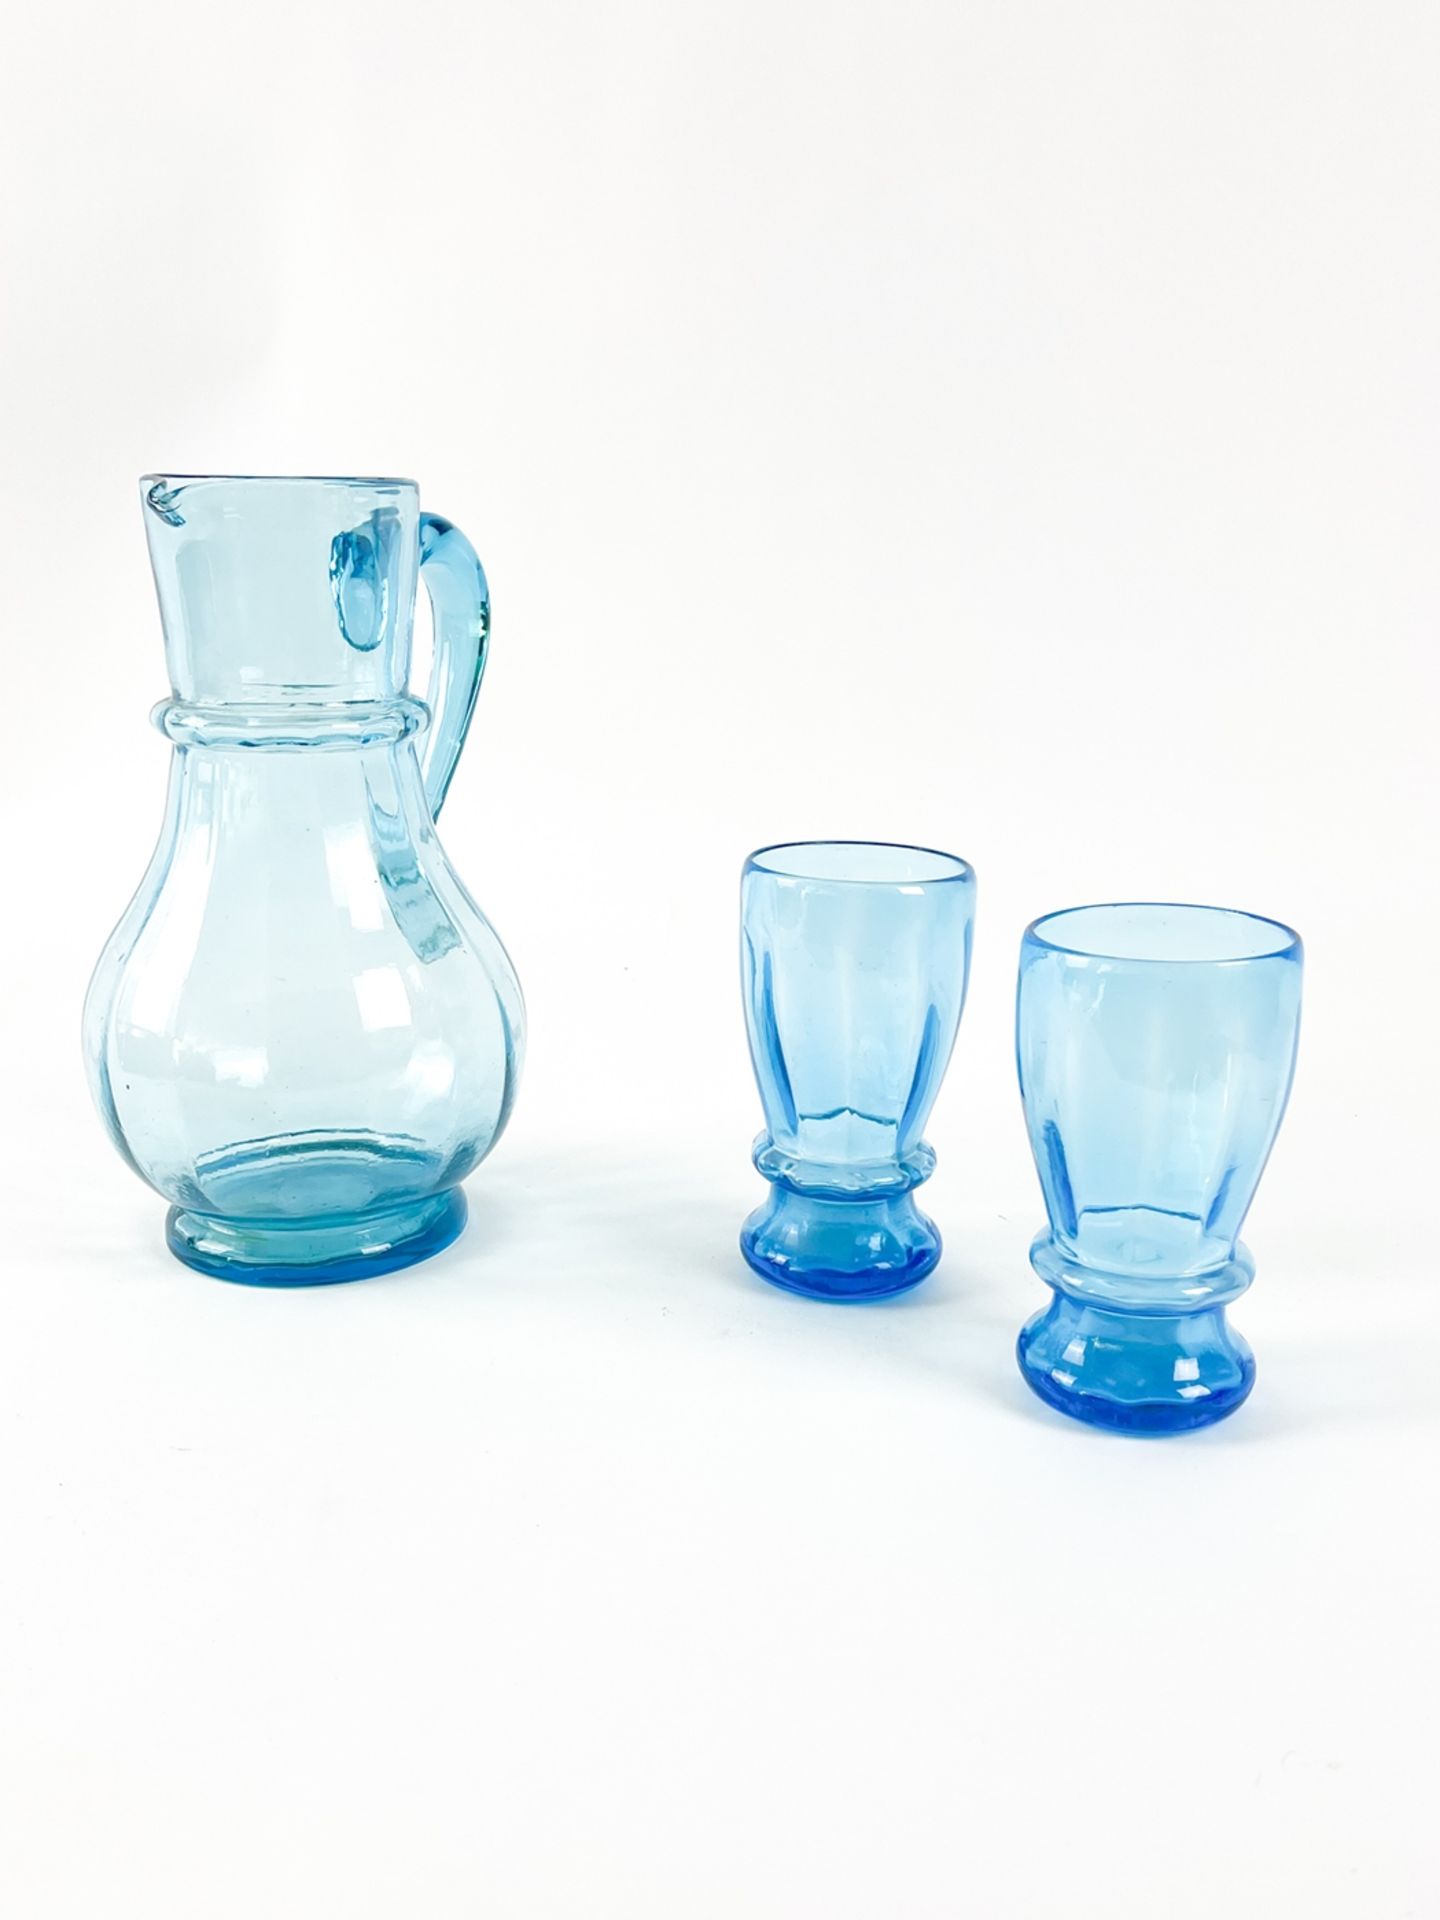 Blauer Glaskrug mit zwei Bechern - Image 2 of 7